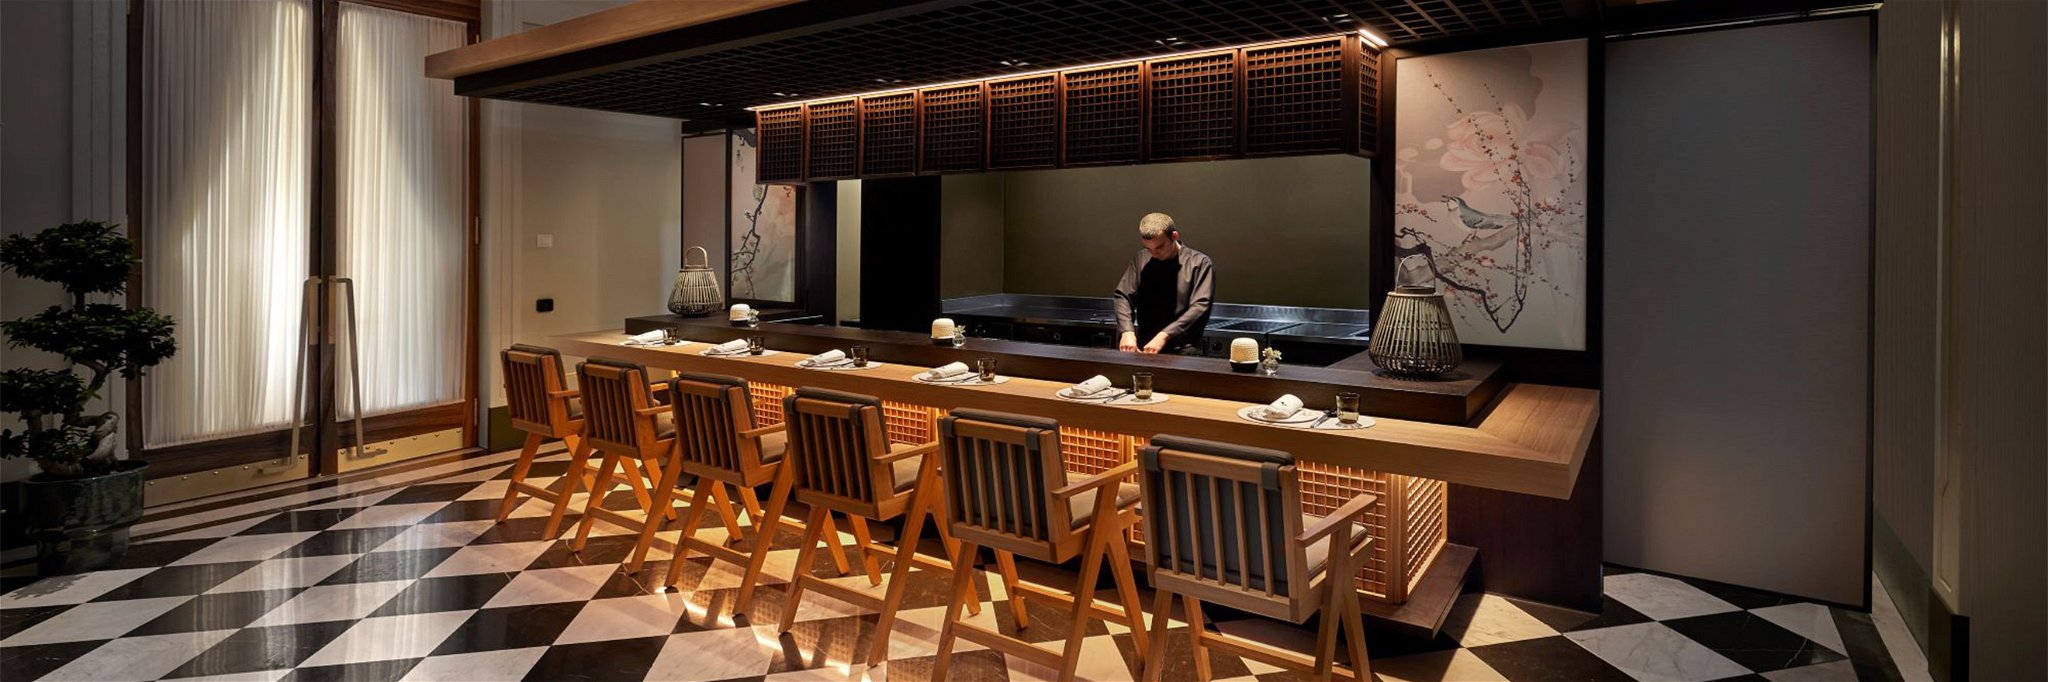 Das neue «Minamo» bietet eine exklusive japanische Fine Dining-Experience.